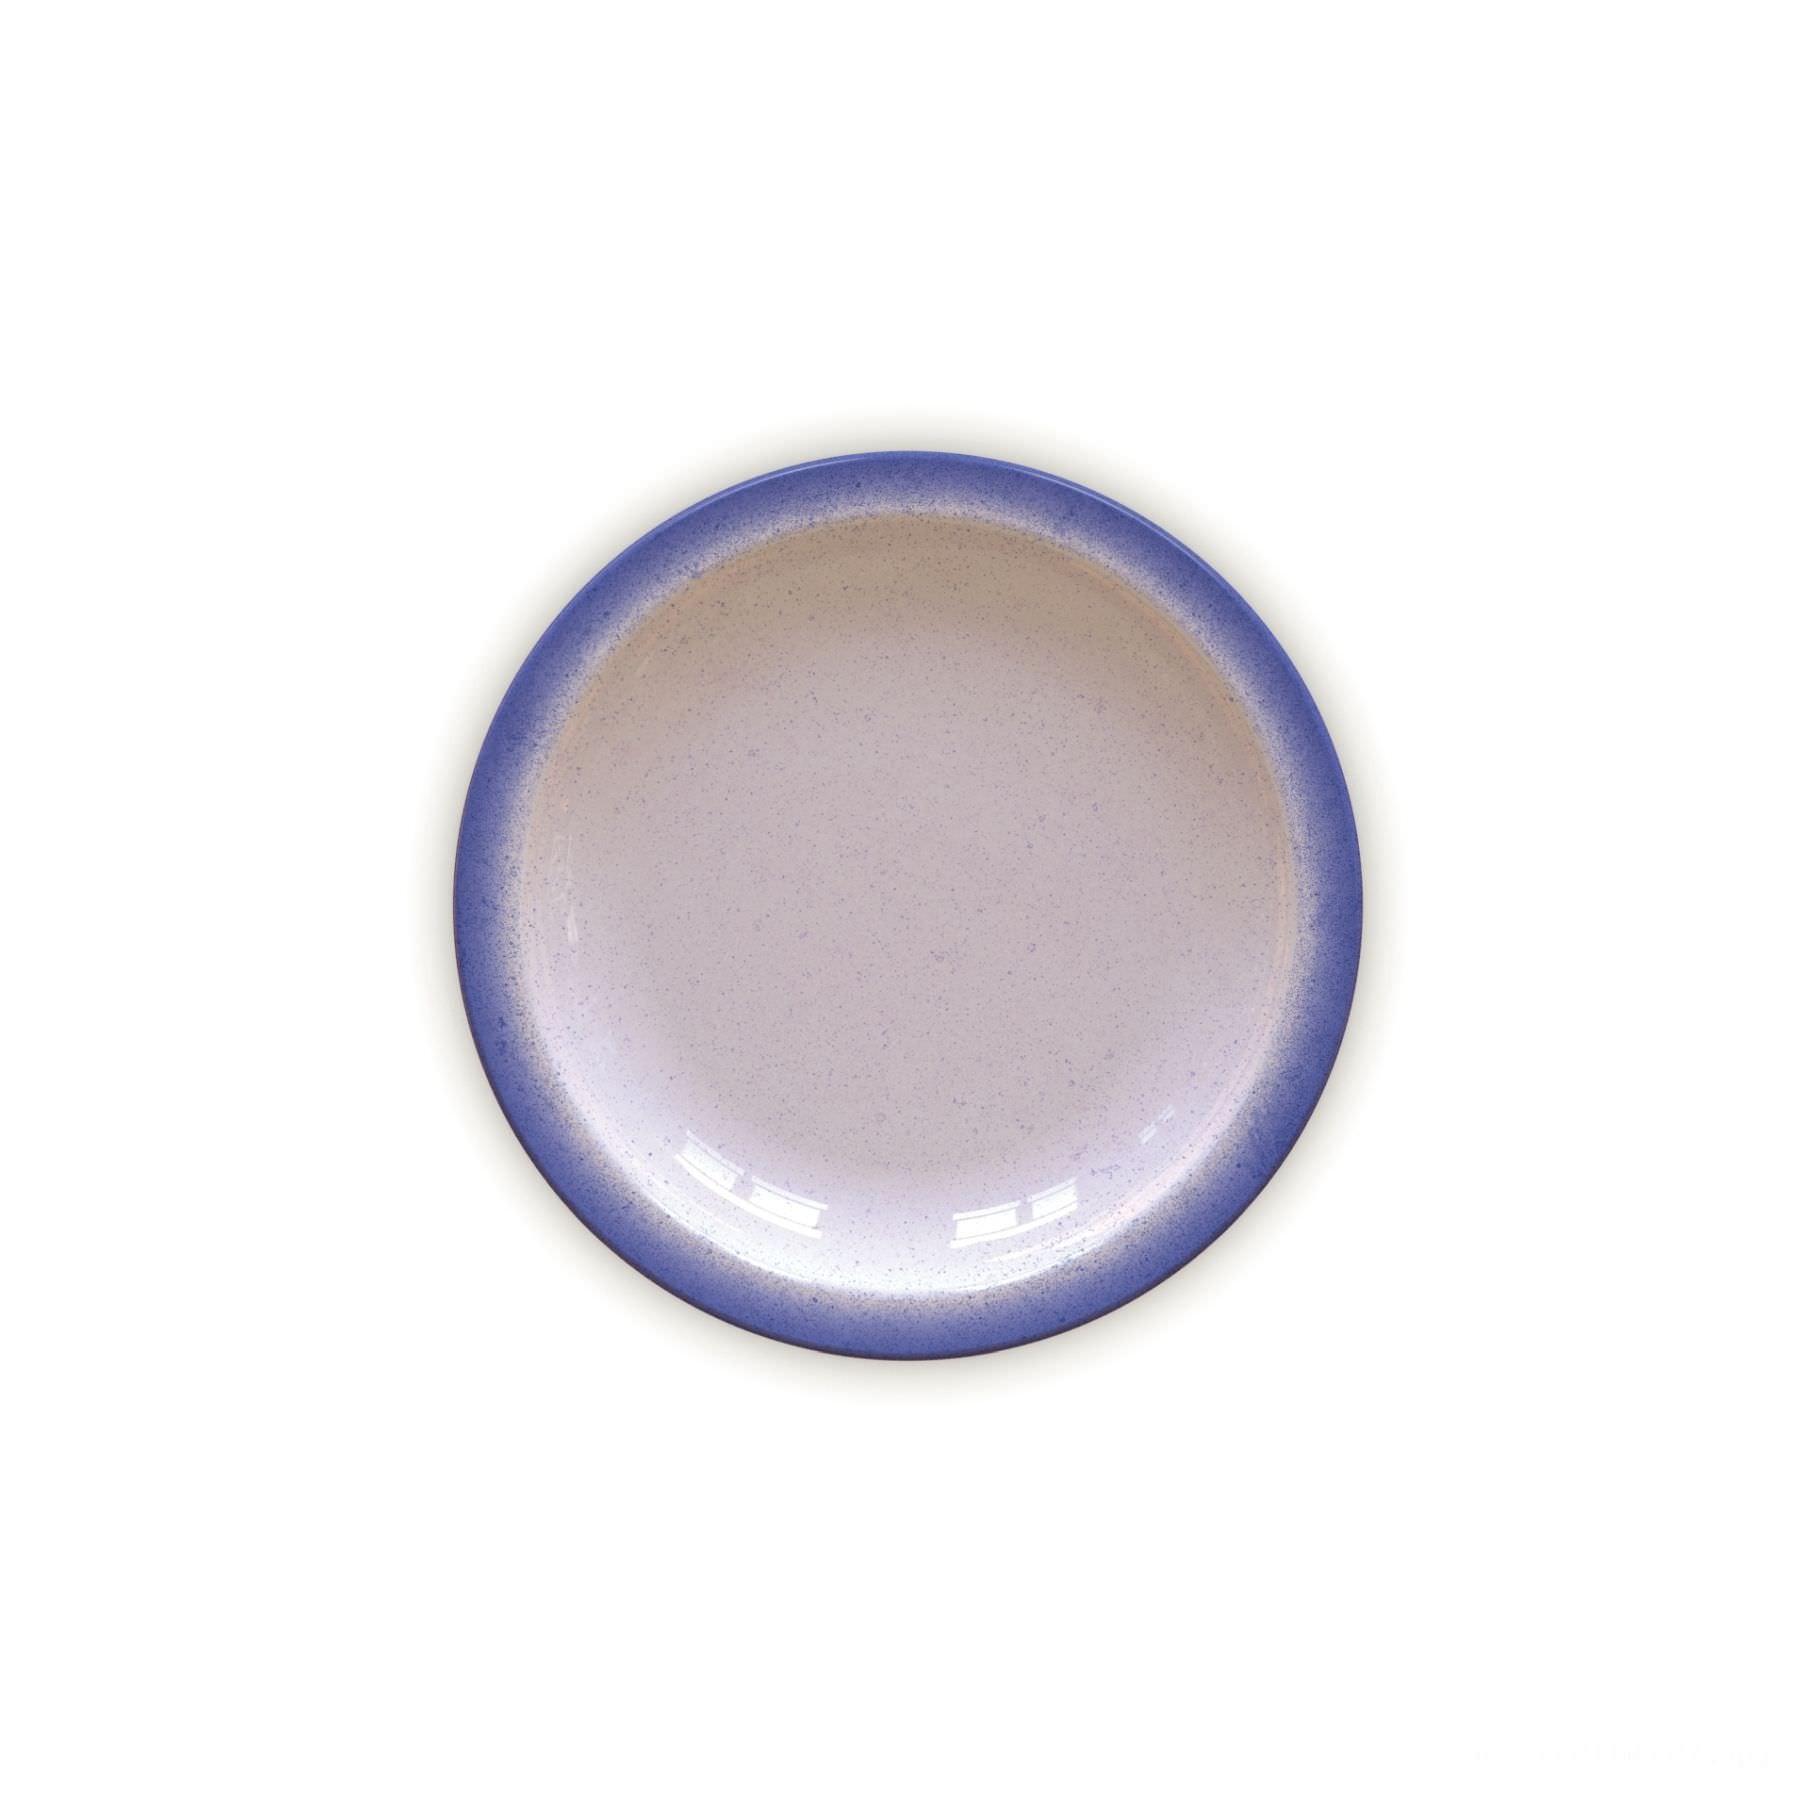 Prato Sobremesa Rústico Azul em Porcelana Decorada 21 cm